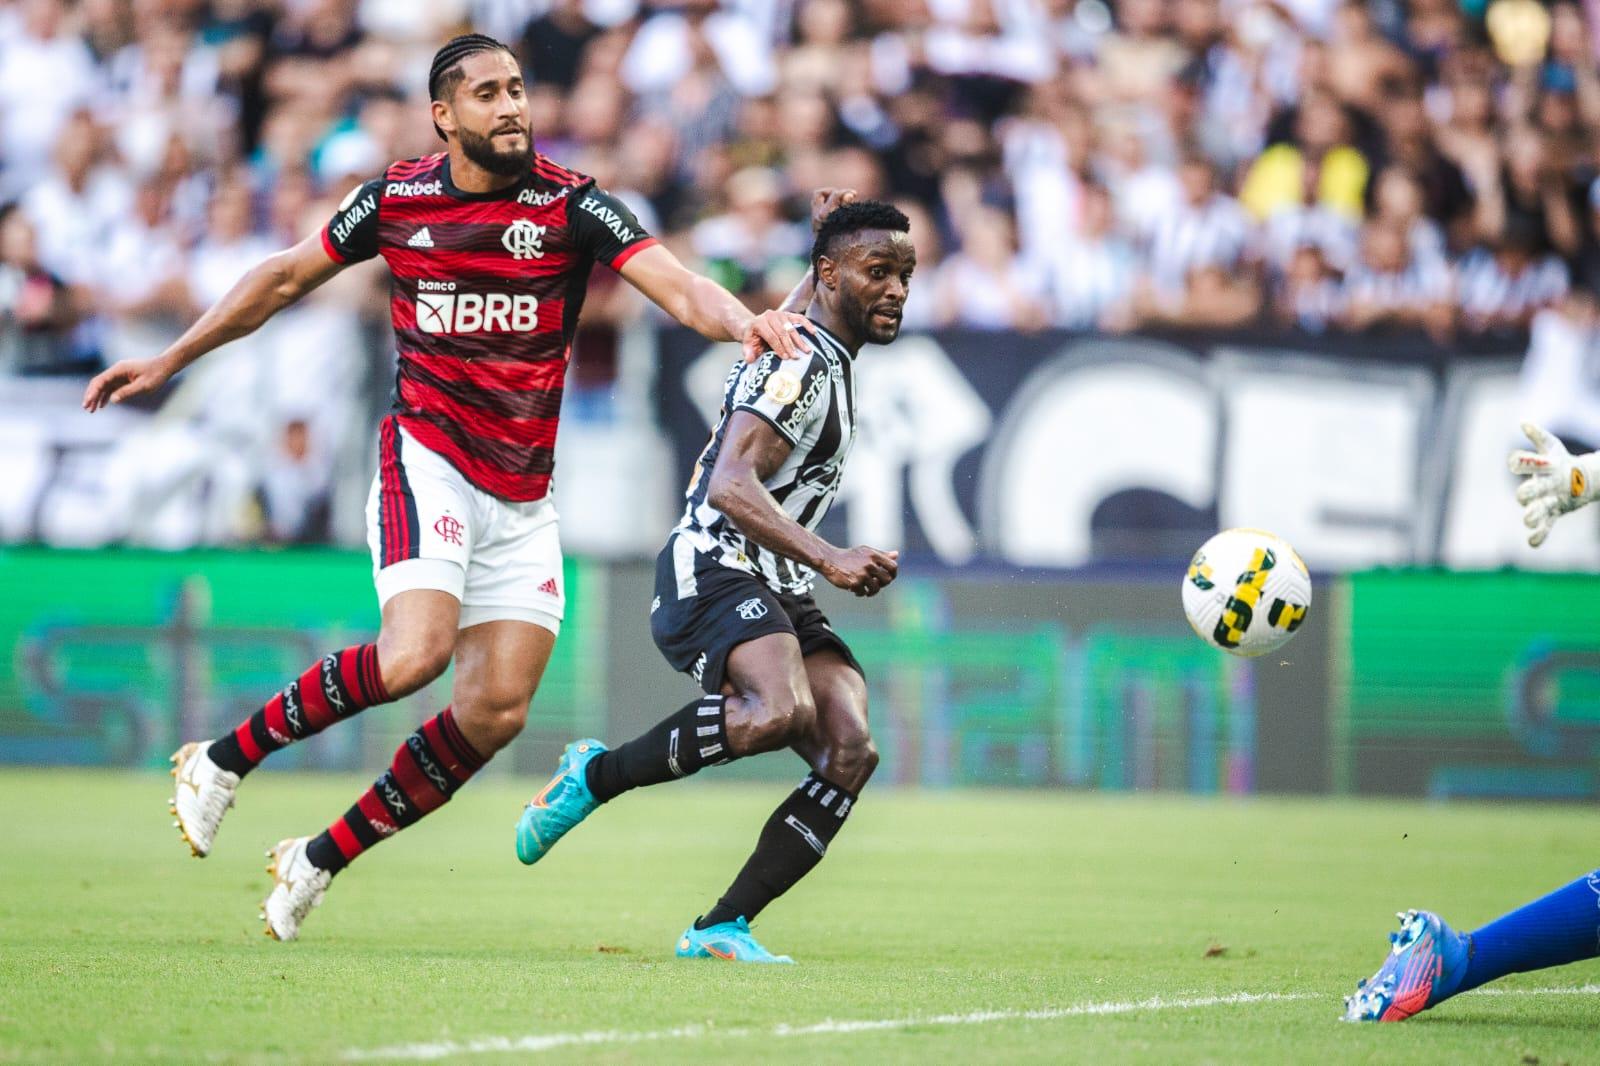 Ceará 2 x 2 Flamengo: veja como foi a partida pela Série A do Brasileirão -  Jogada - Diário do Nordeste